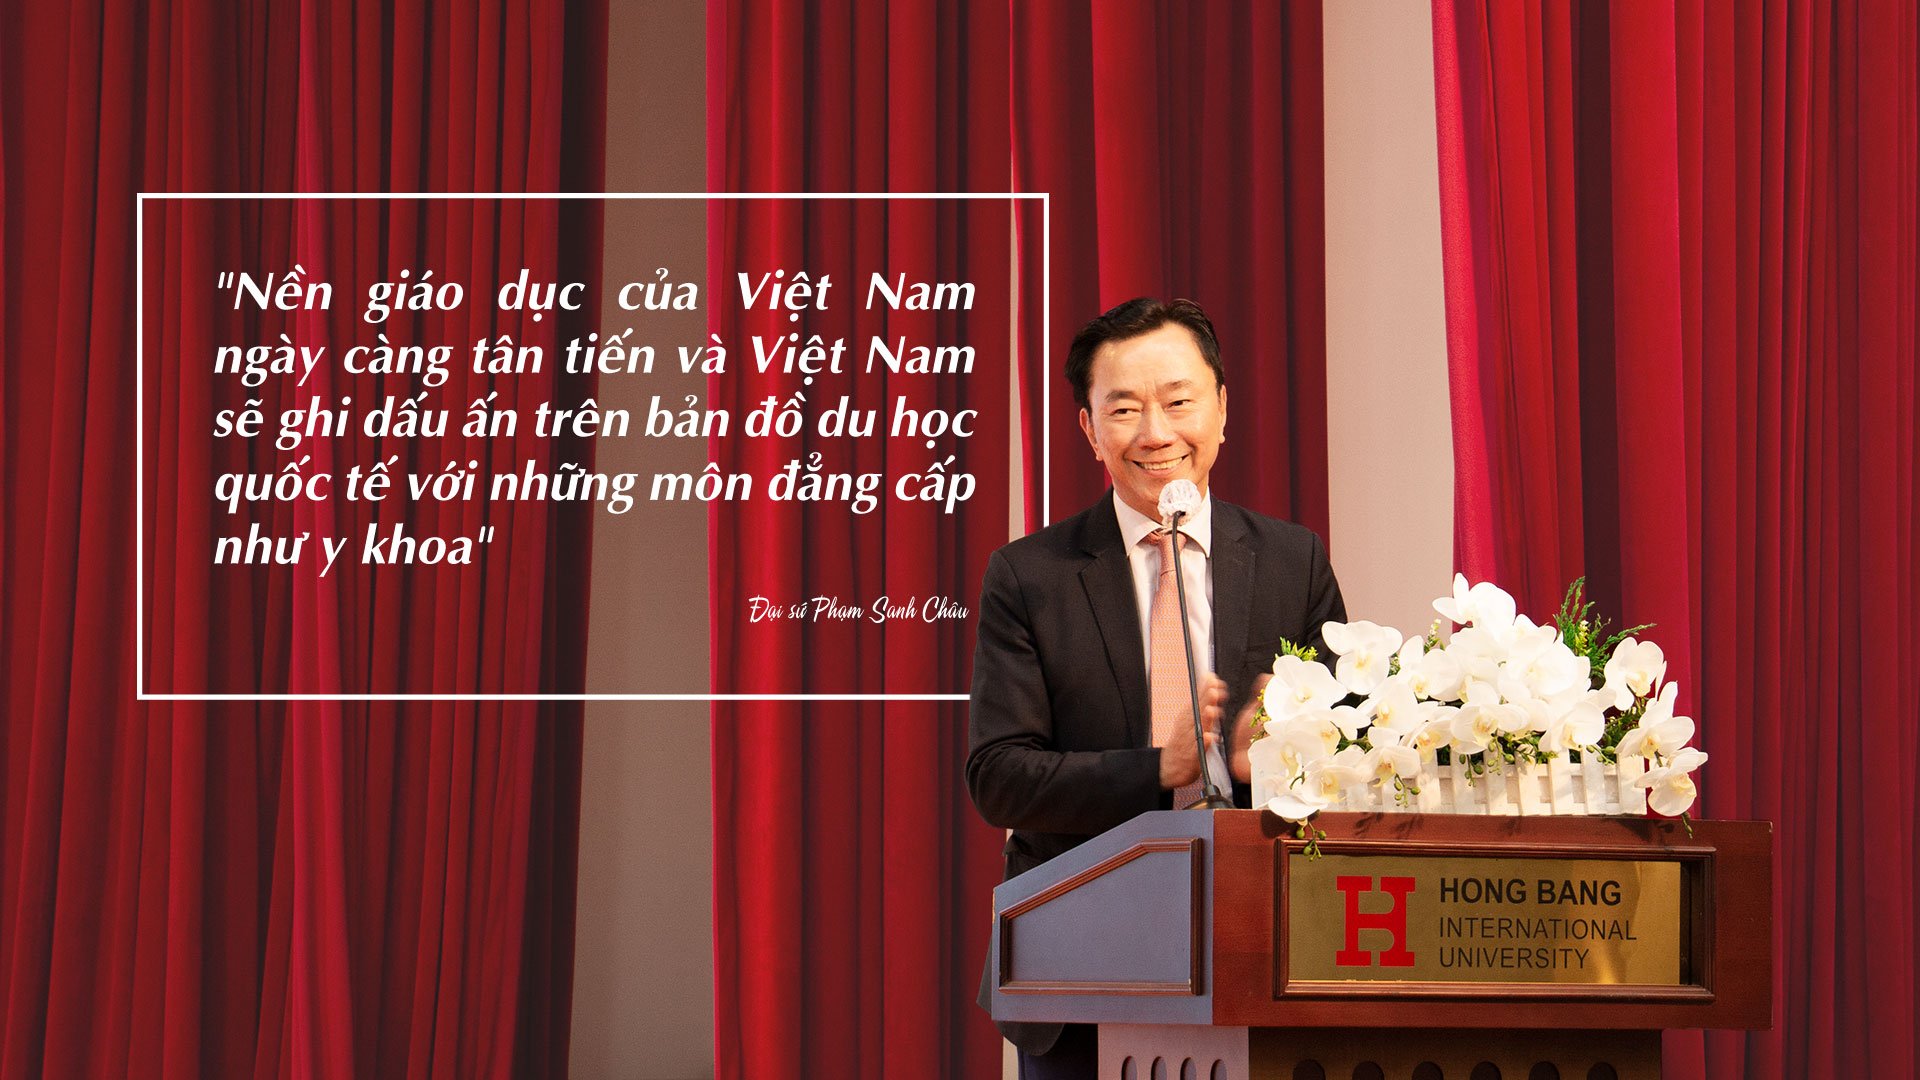 “Xuất khẩu” giáo dục: Bước tiến mới trong đào tạo Y khoa tại Việt Nam